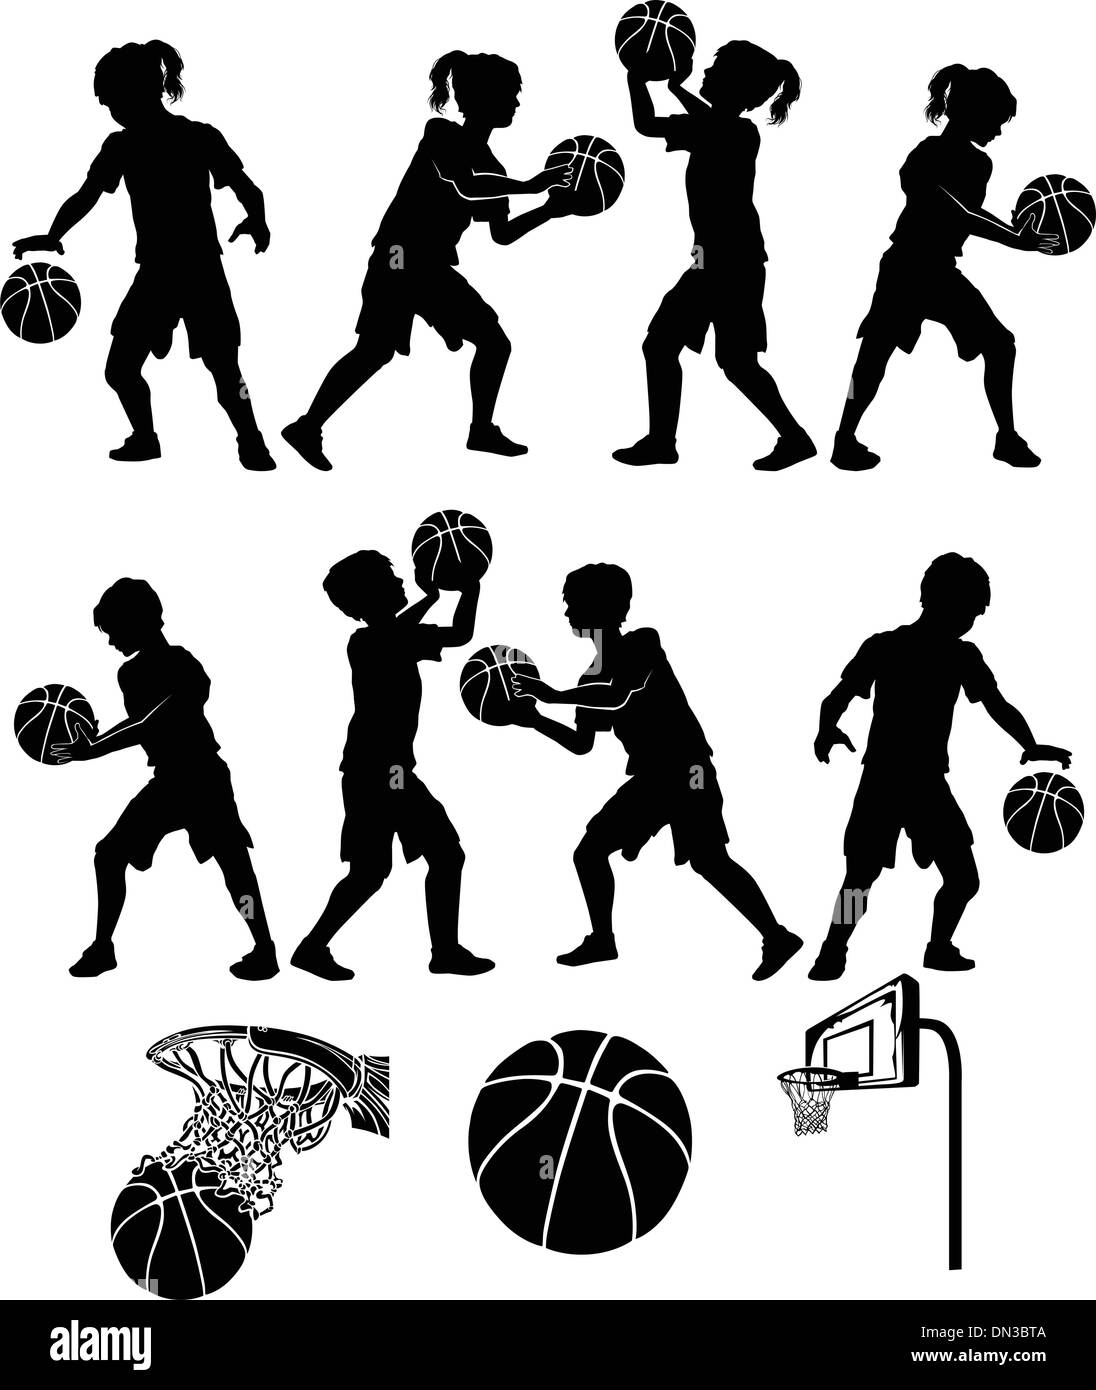 Basketball-Silhouetten Kinder, jungen und Mädchen Stock Vektor